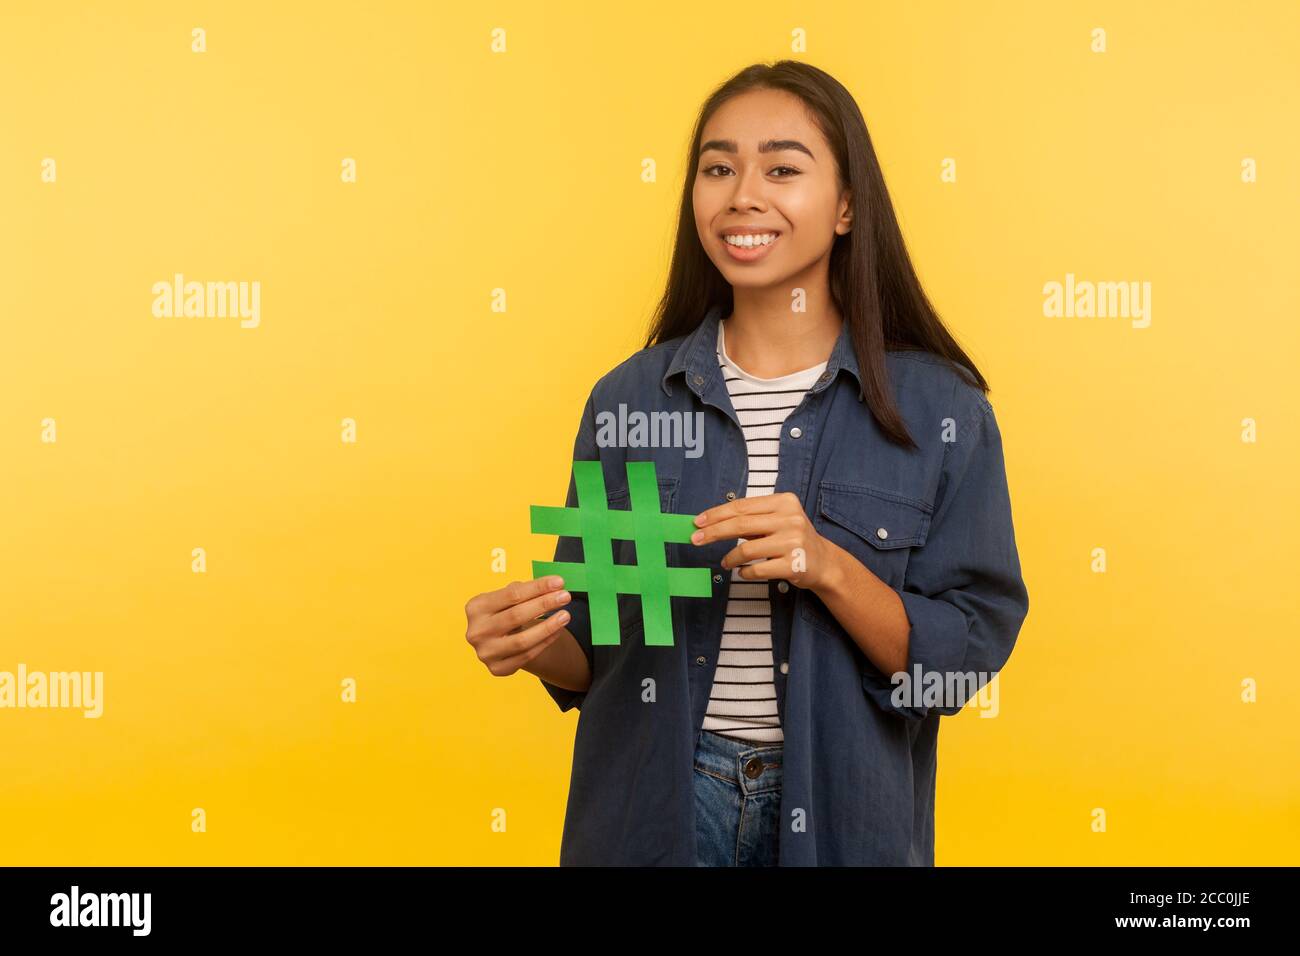 Idée populaire d'Internet, sujet viral. Portrait de la fille heureuse en chemise denim tenant le symbole hashtag et souriant à l'appareil photo, la promotion du blog, tendances web. Dans Banque D'Images